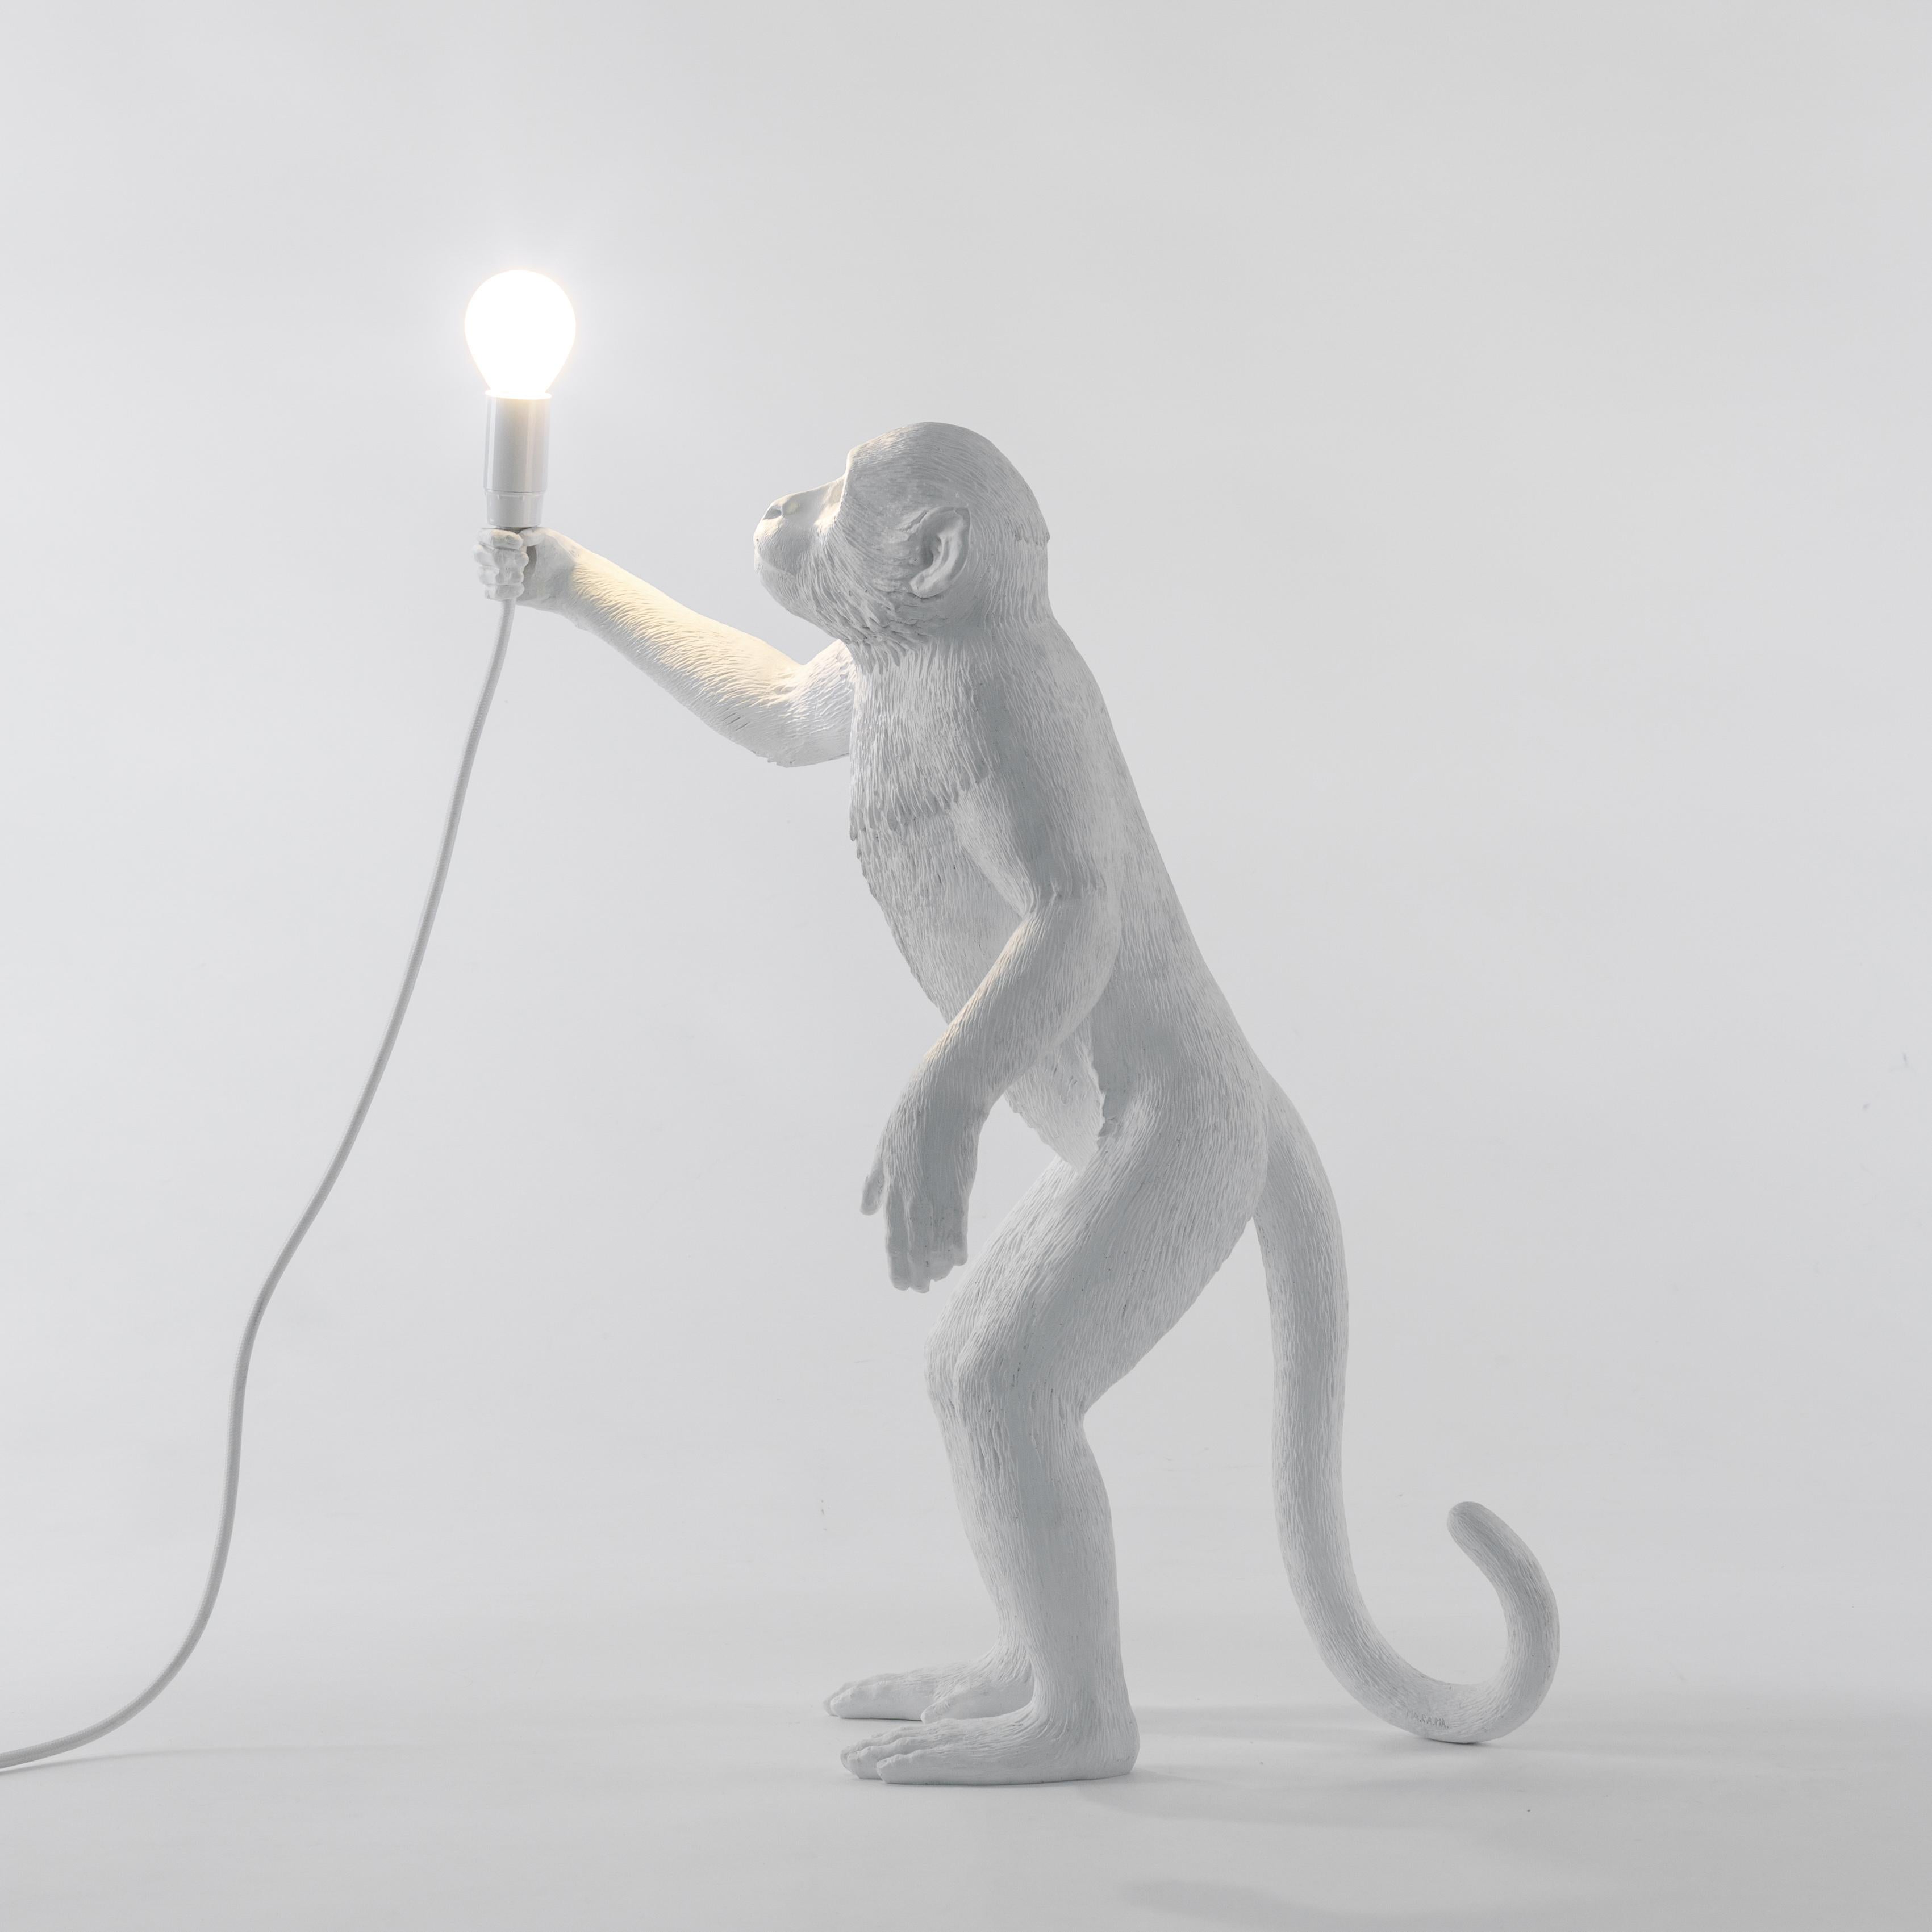 Ein schelmischer Affe hat dein Licht gestohlen, und jetzt liegt es an dir, es zurückzuholen. Mit dieser von Marcantonio entworfenen Lampe aus weißem Harz fühlt man sich wie auf einer Safari, verloren im tiefschwarzen Afrika.

- Stehlampe
- Größe: